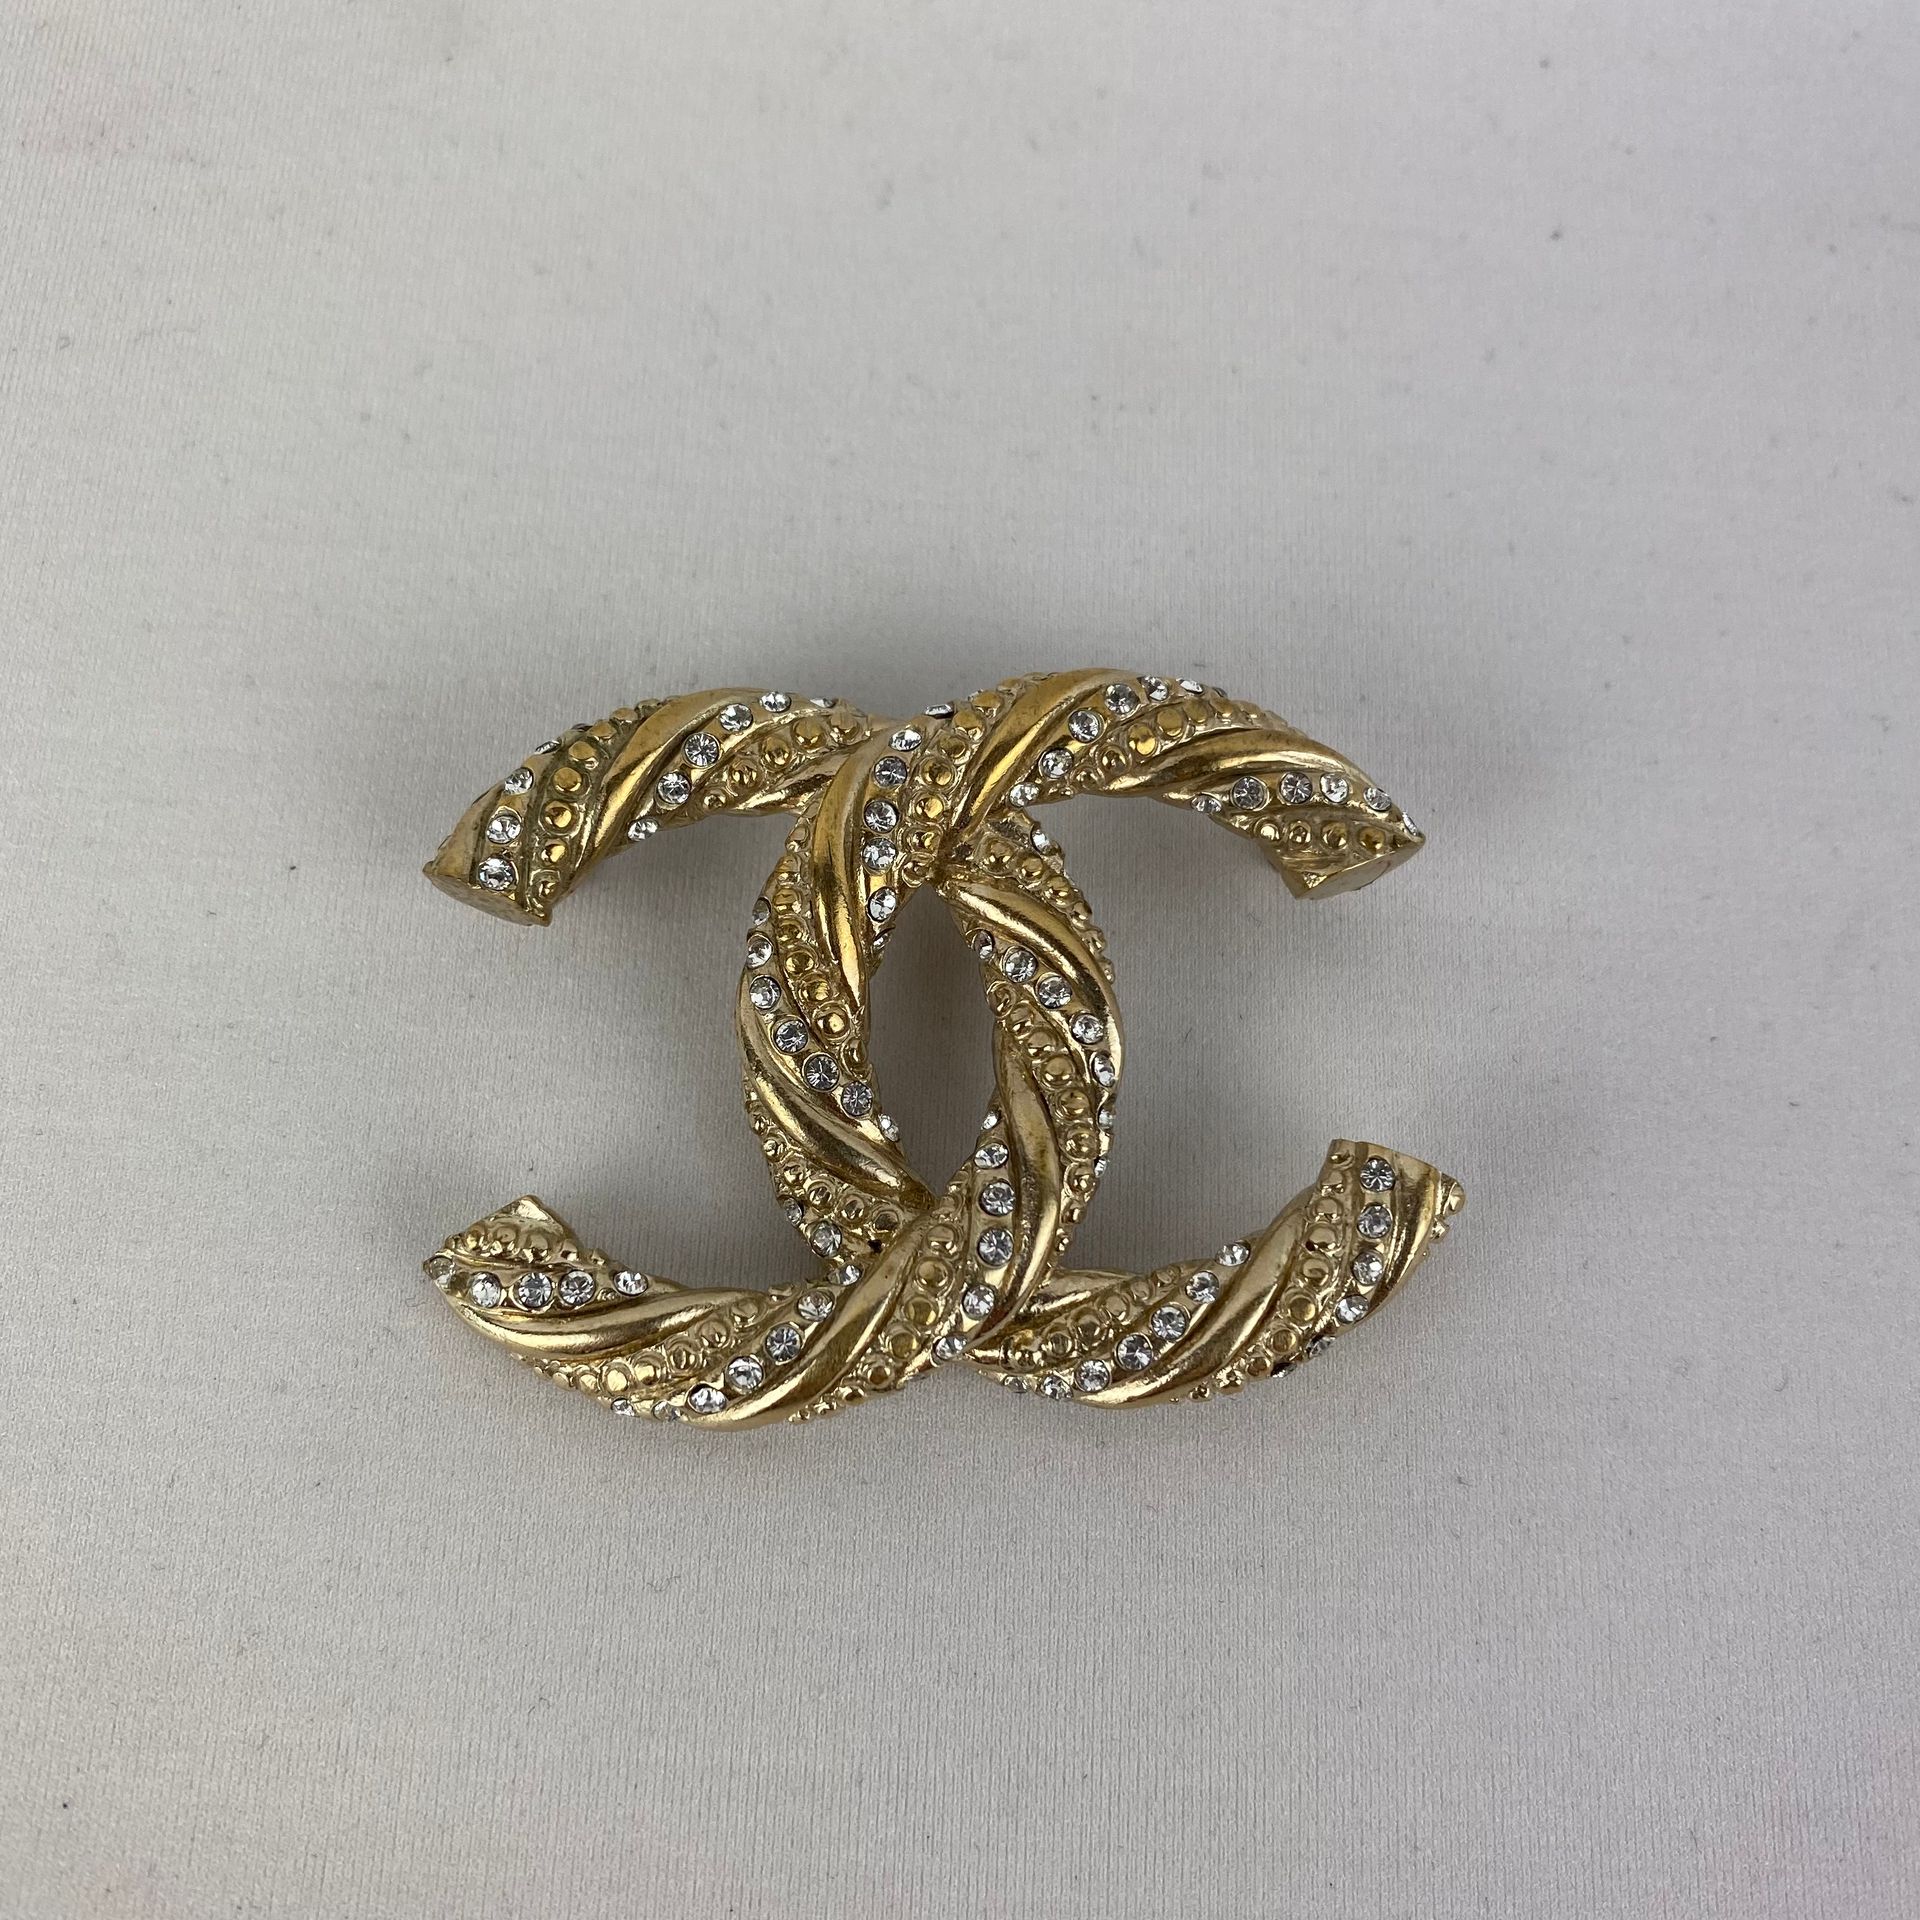 CHANEL 香奈儿CC胸针，金黄色黄铜缠绕小水钻，5/4.5厘米，二手货，缺扣针。